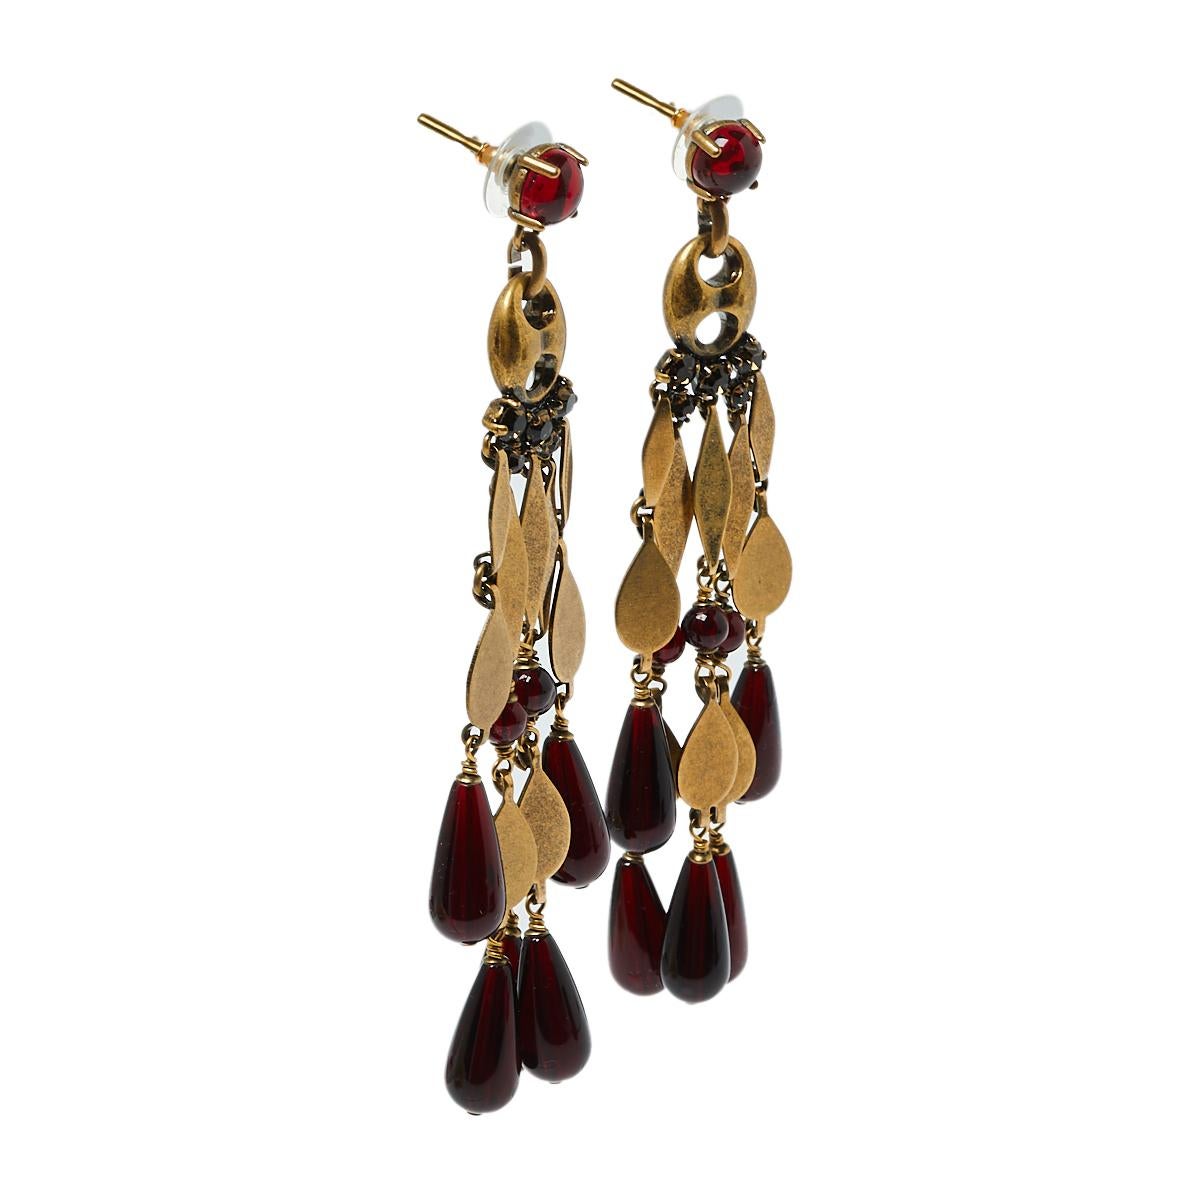 Diese Ohrringe von Gucci sind mit Kristallen, Perlen und goldfarbenem Metall verziert und sorgen für ein faszinierendes Ergebnis. Im Stil eines Kronleuchters gestaltet, sind sie elegant und komfortabel. Dieses Paar Ohrringe ist das perfekte Geschenk